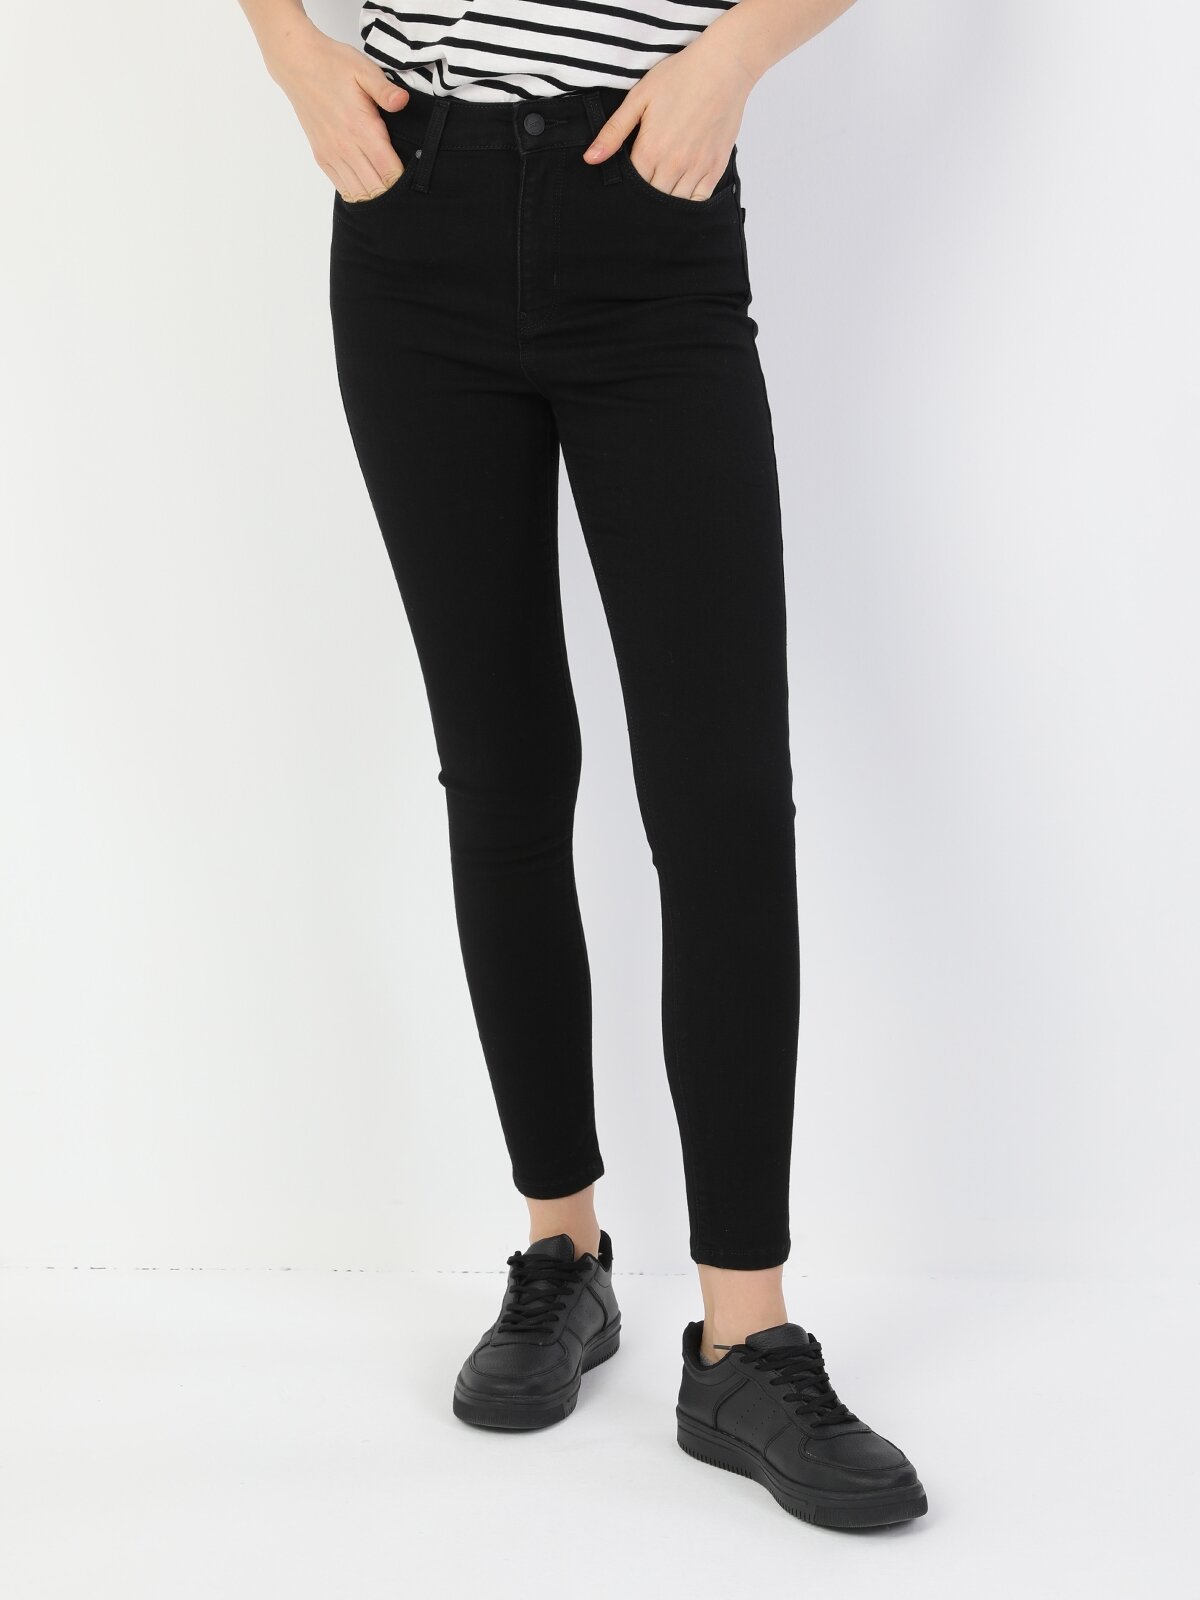 Colins 760 Dıana Yüksek Bel Dar Paça Super Slim Fit Siyah Kadın Jean Pantolon. 4